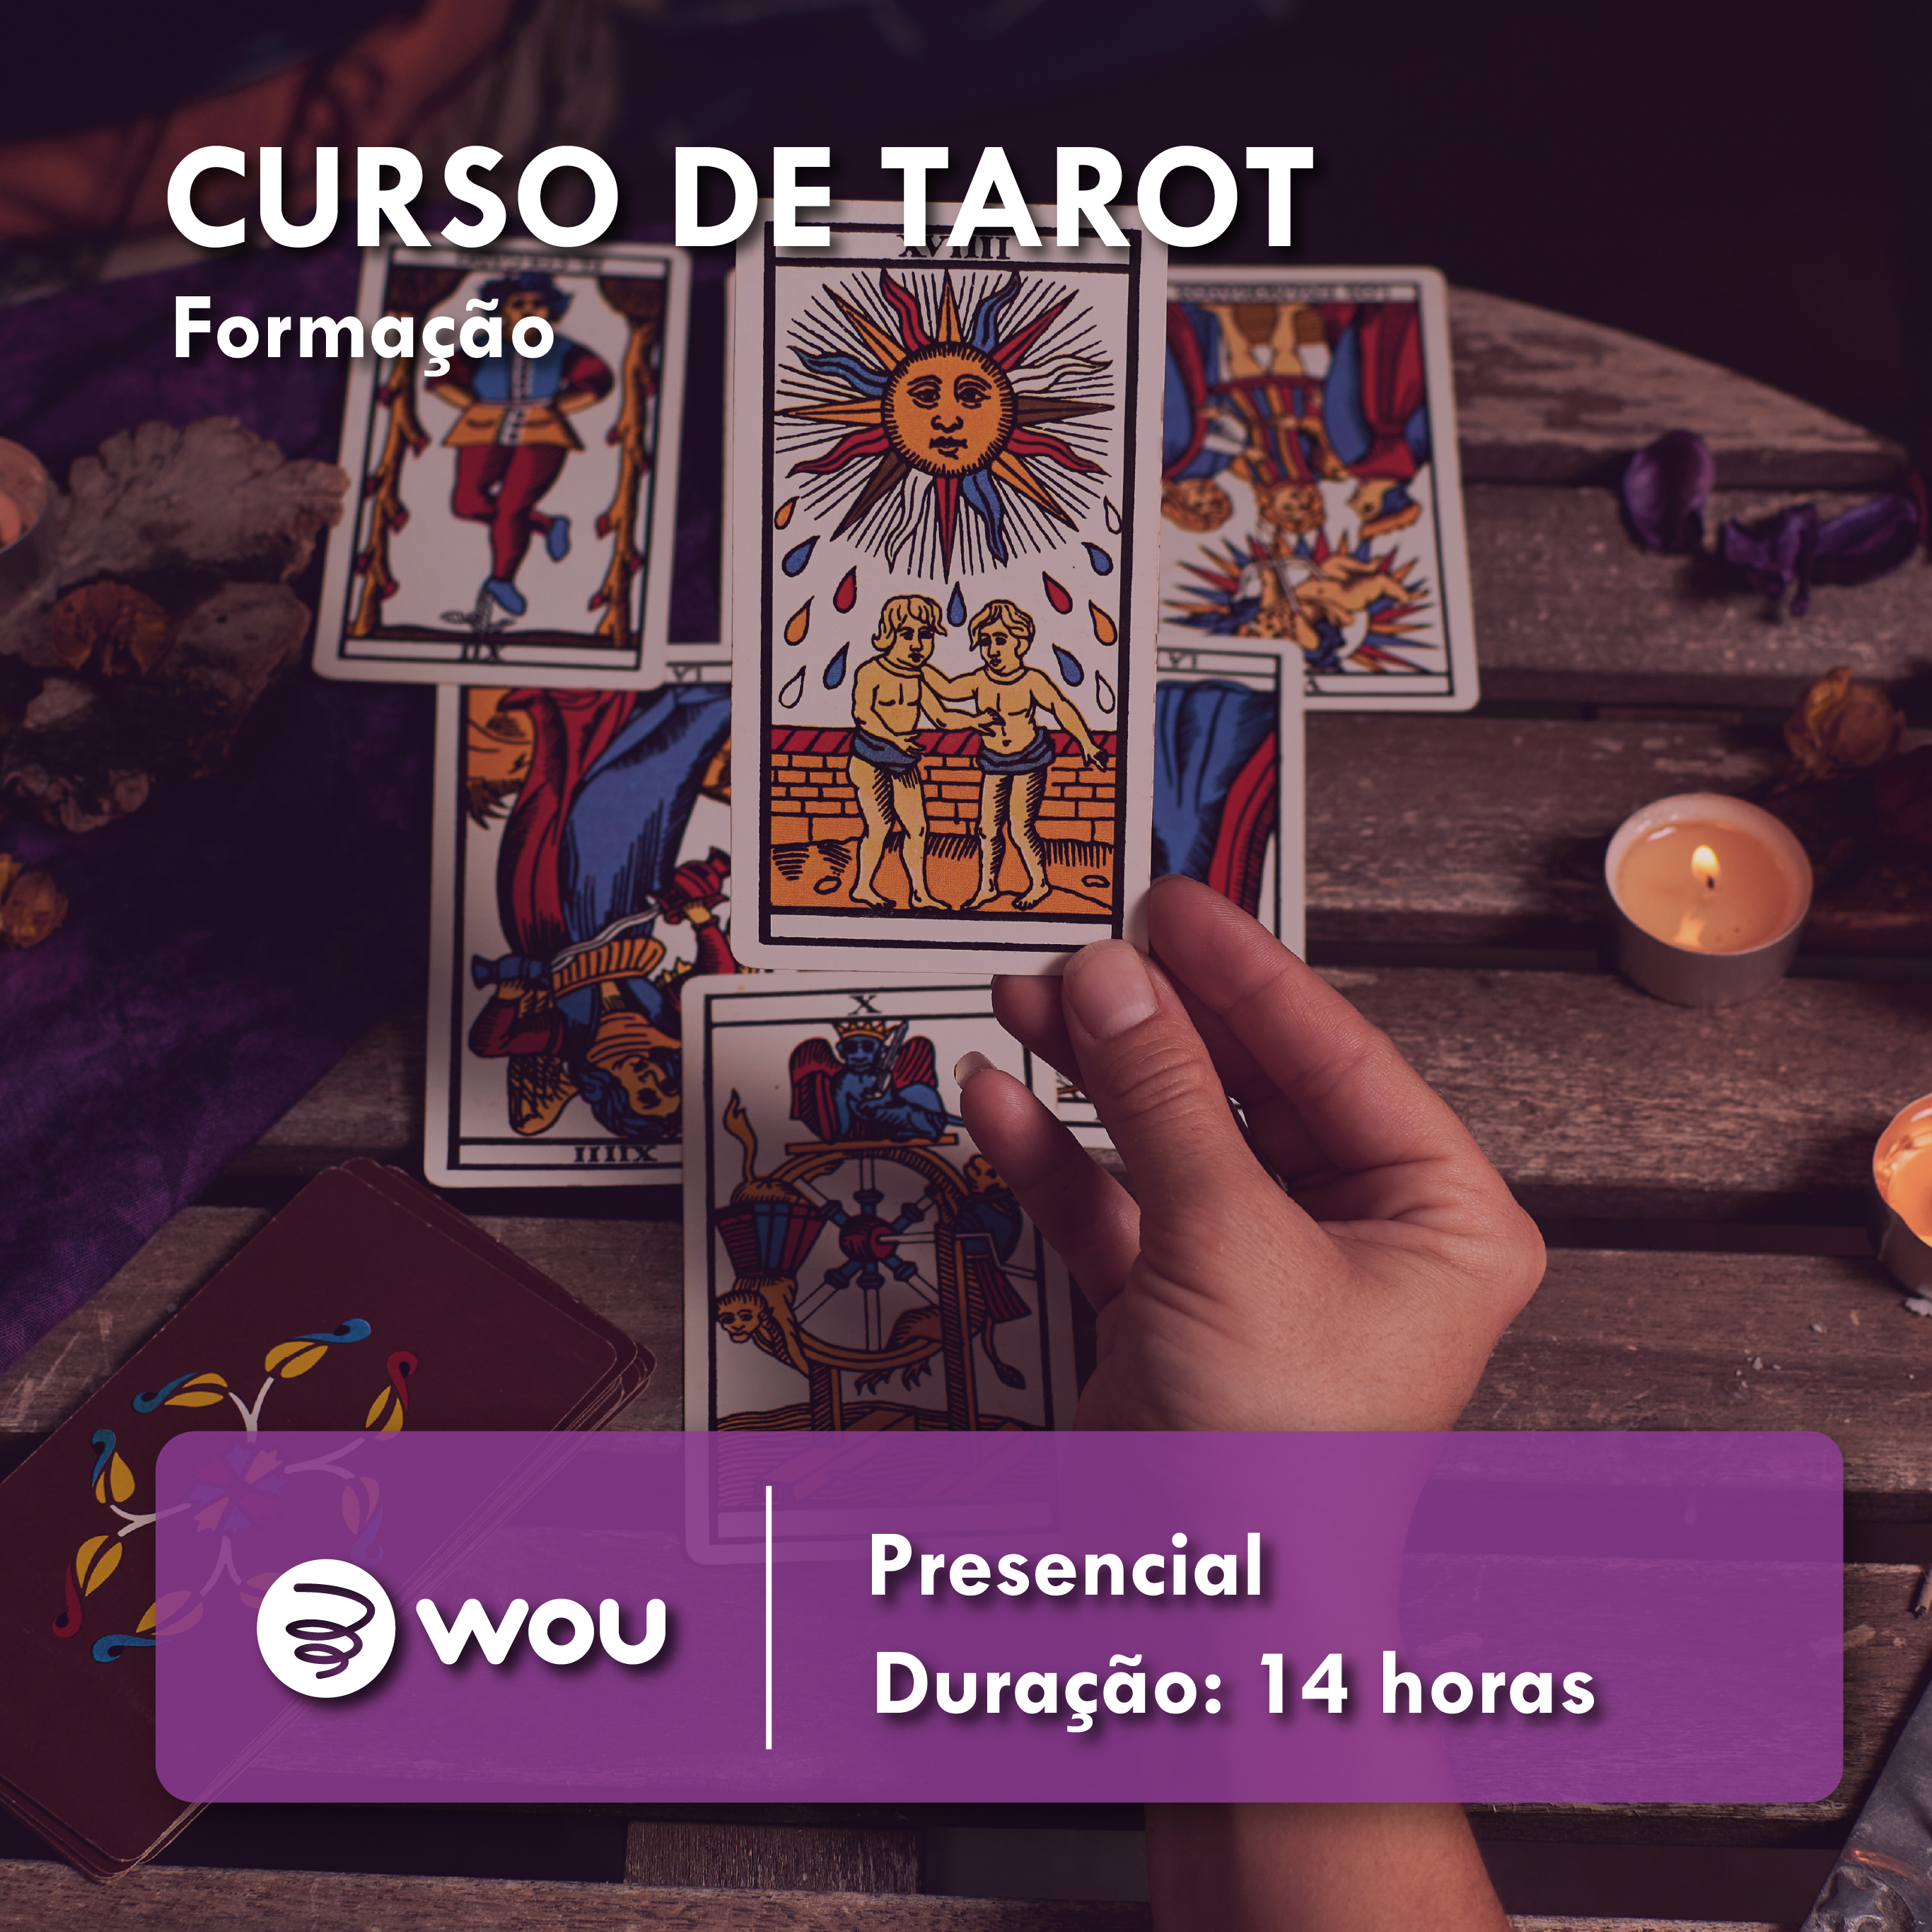 Tarot Course in Figueira da Foz